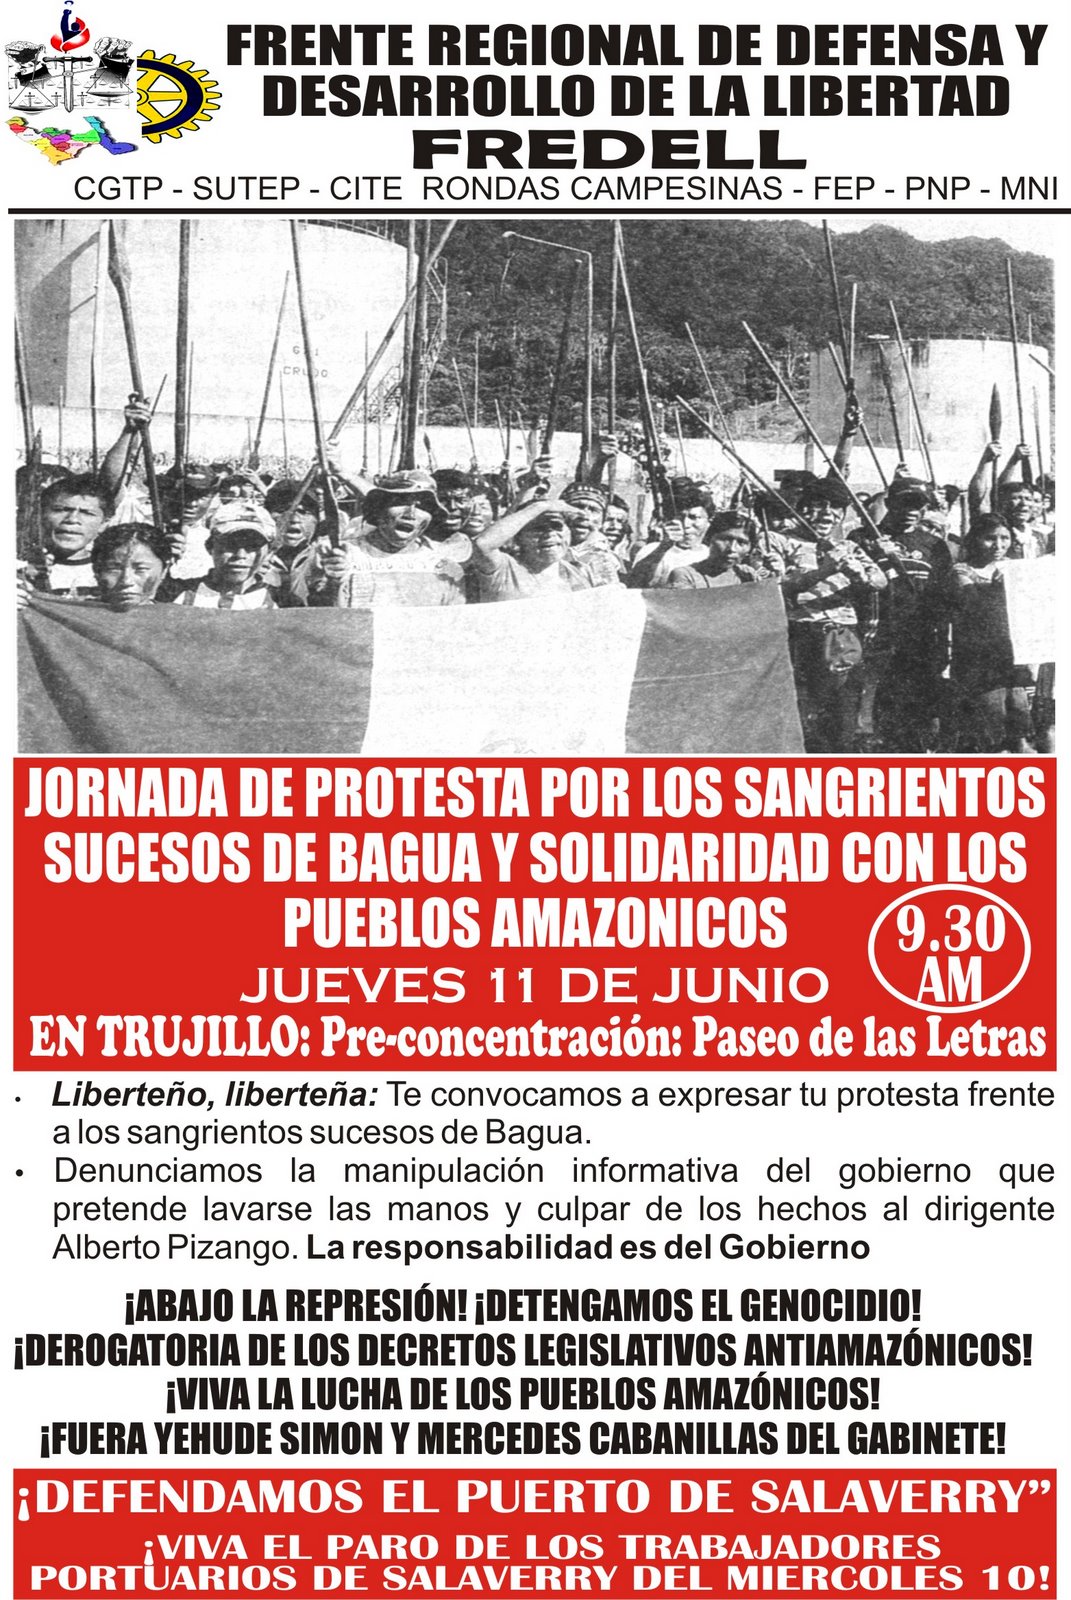 [JORNADA+DE+PROTESTA+-+JUEVES+11+DE+JUNIO.jpg]